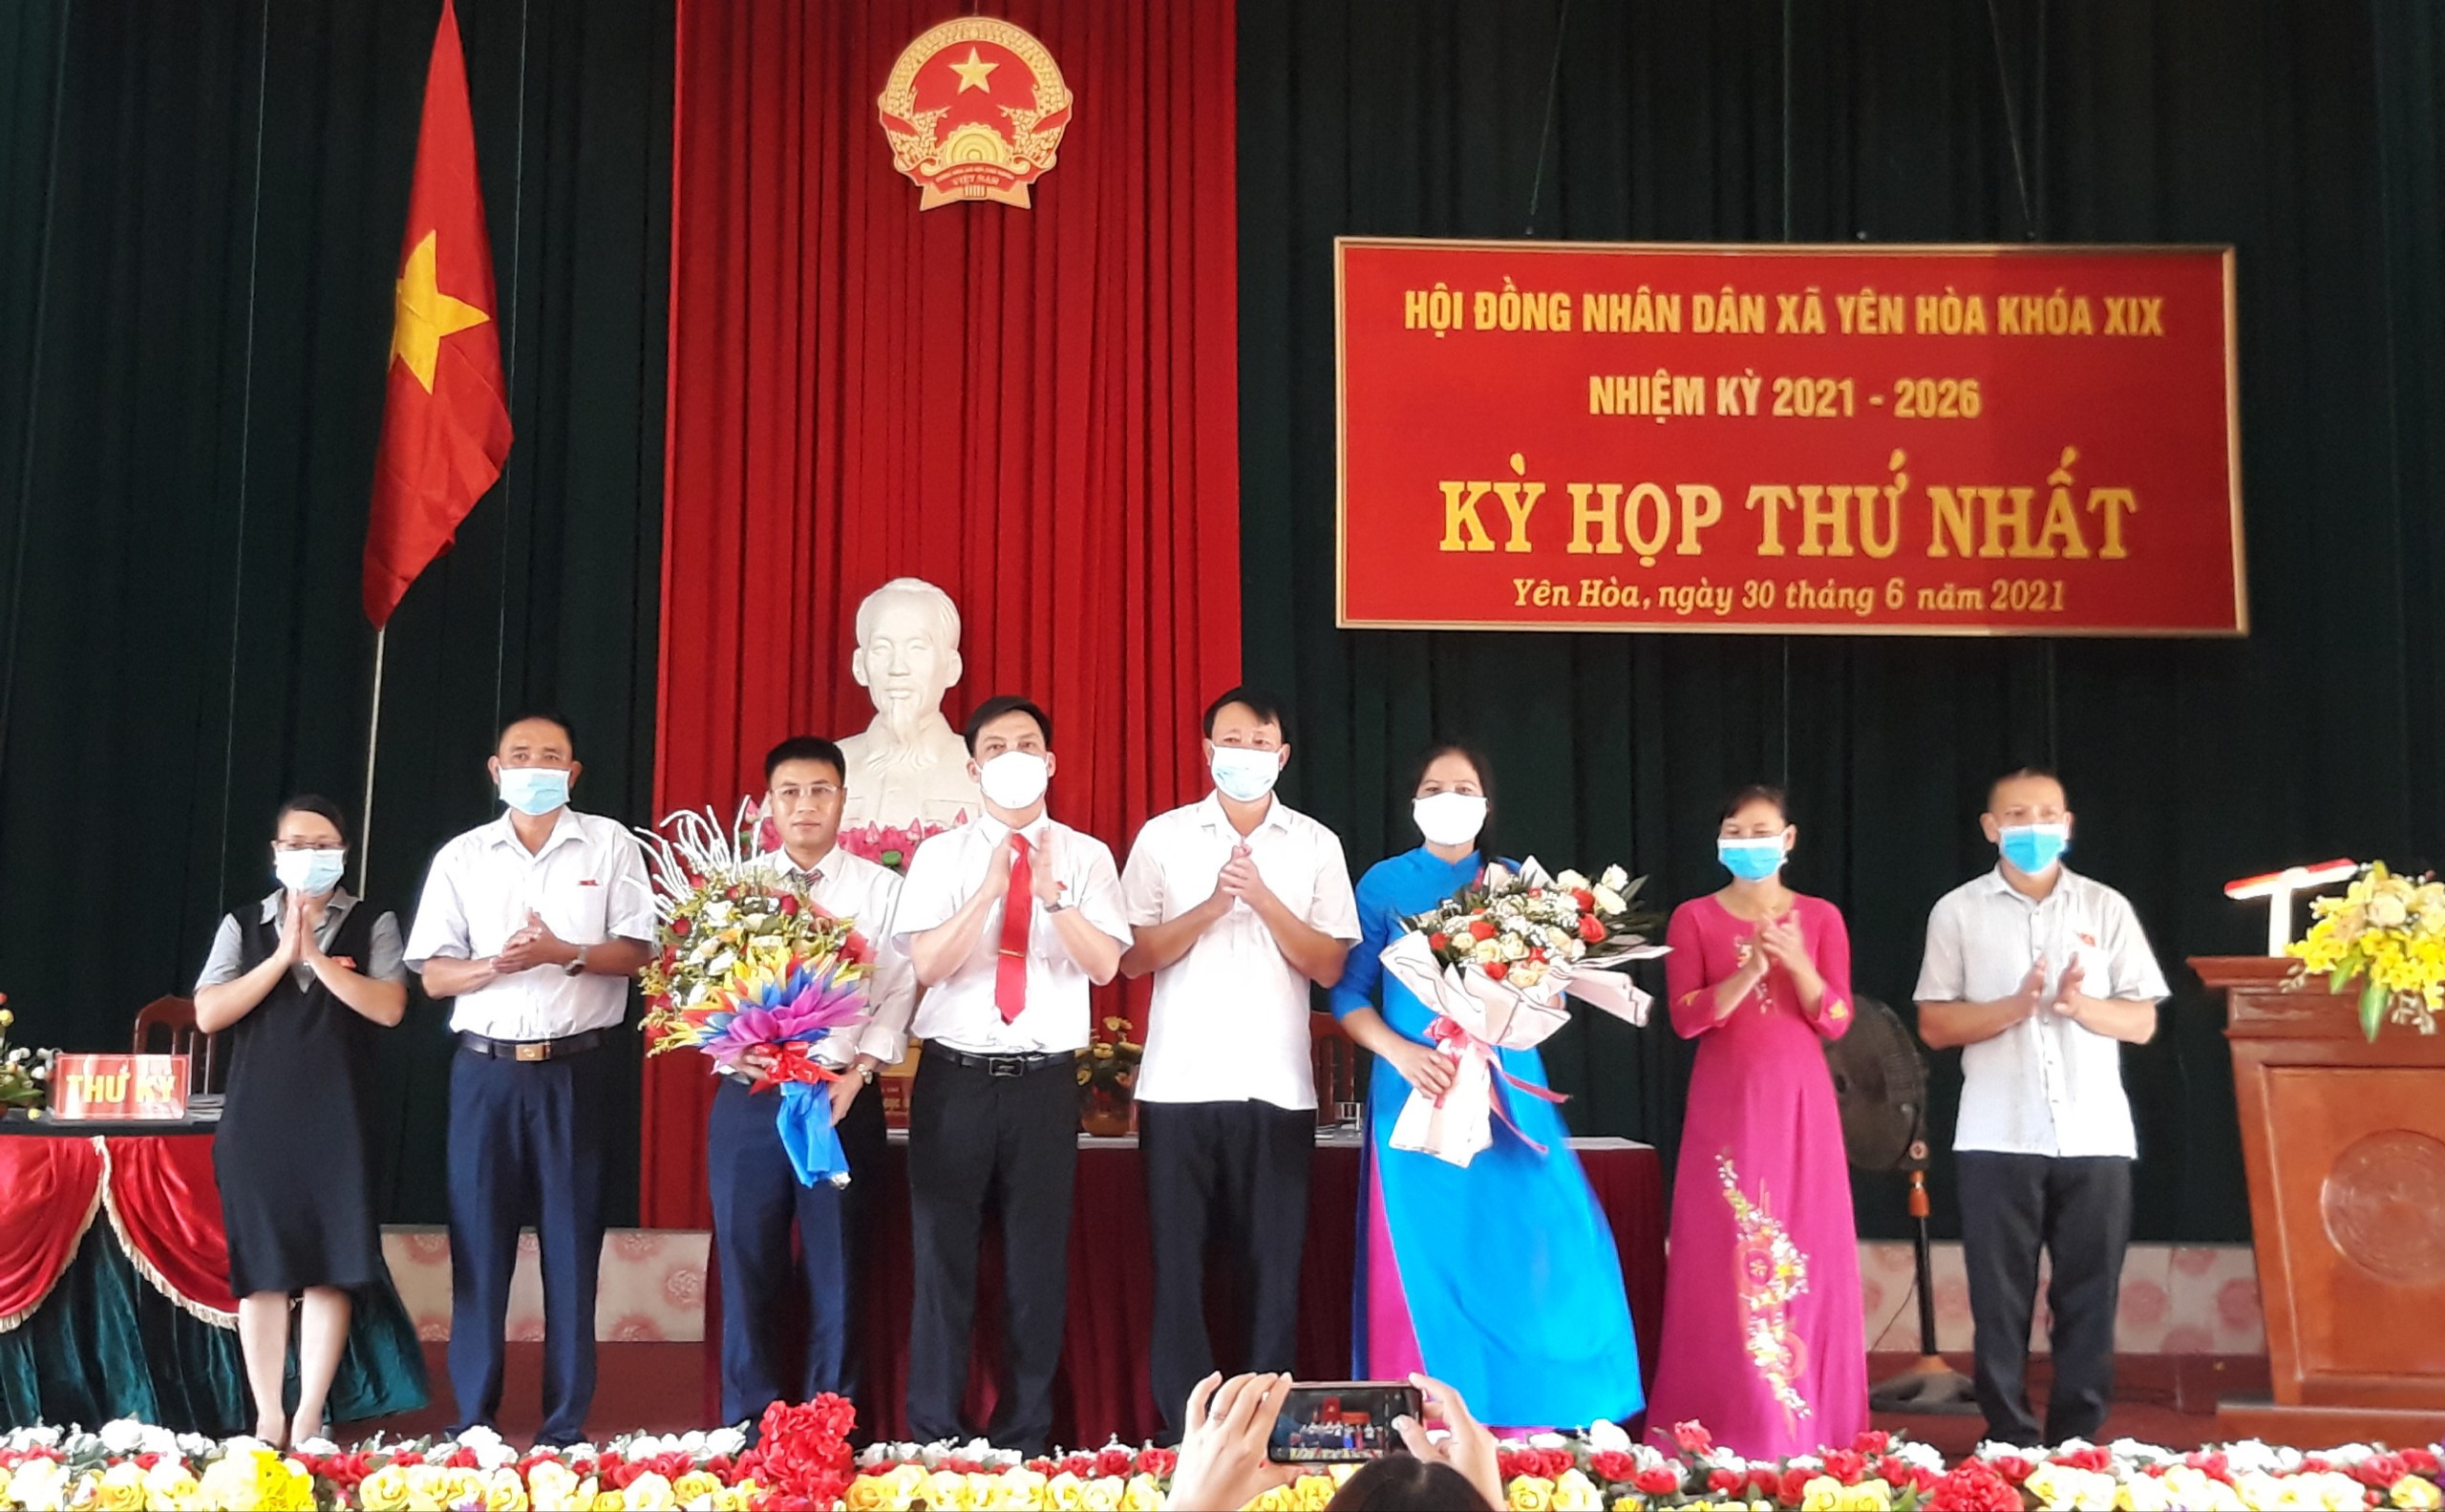 Kỳ họp thứ nhất HĐND xã Yên Hòa khóa XIX, nhiệm kỳ 2021 - 2026